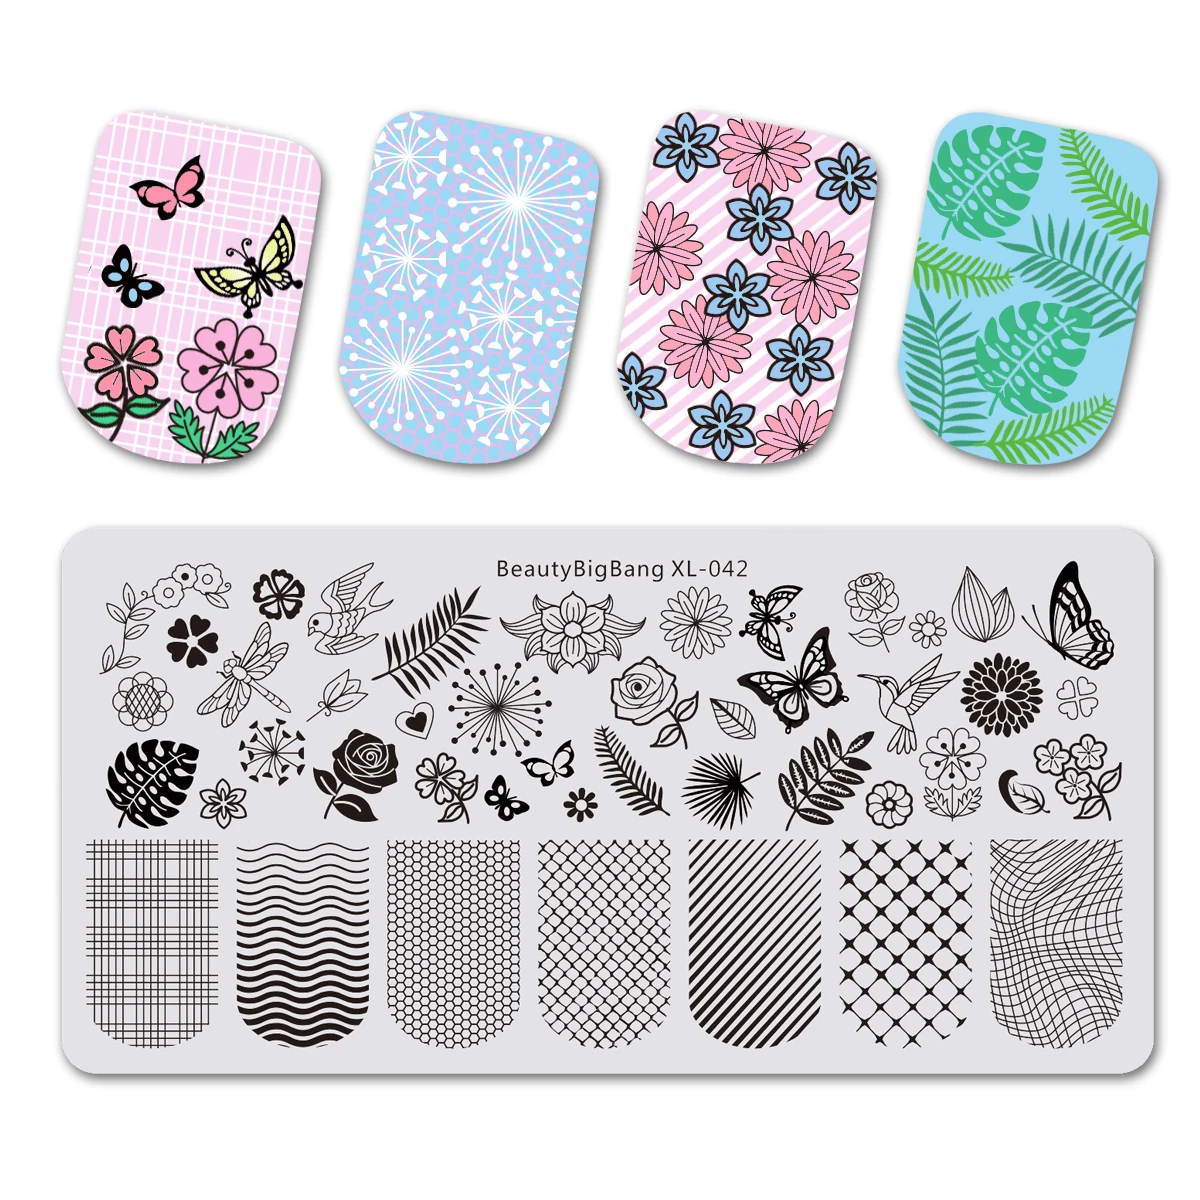 BeautyBigBang природа растения животные строительный дизайн изображения ногтей шаблон штамповочной пластины дизайн ногтей штамп ногтей плесень - Цвет: 684467770456